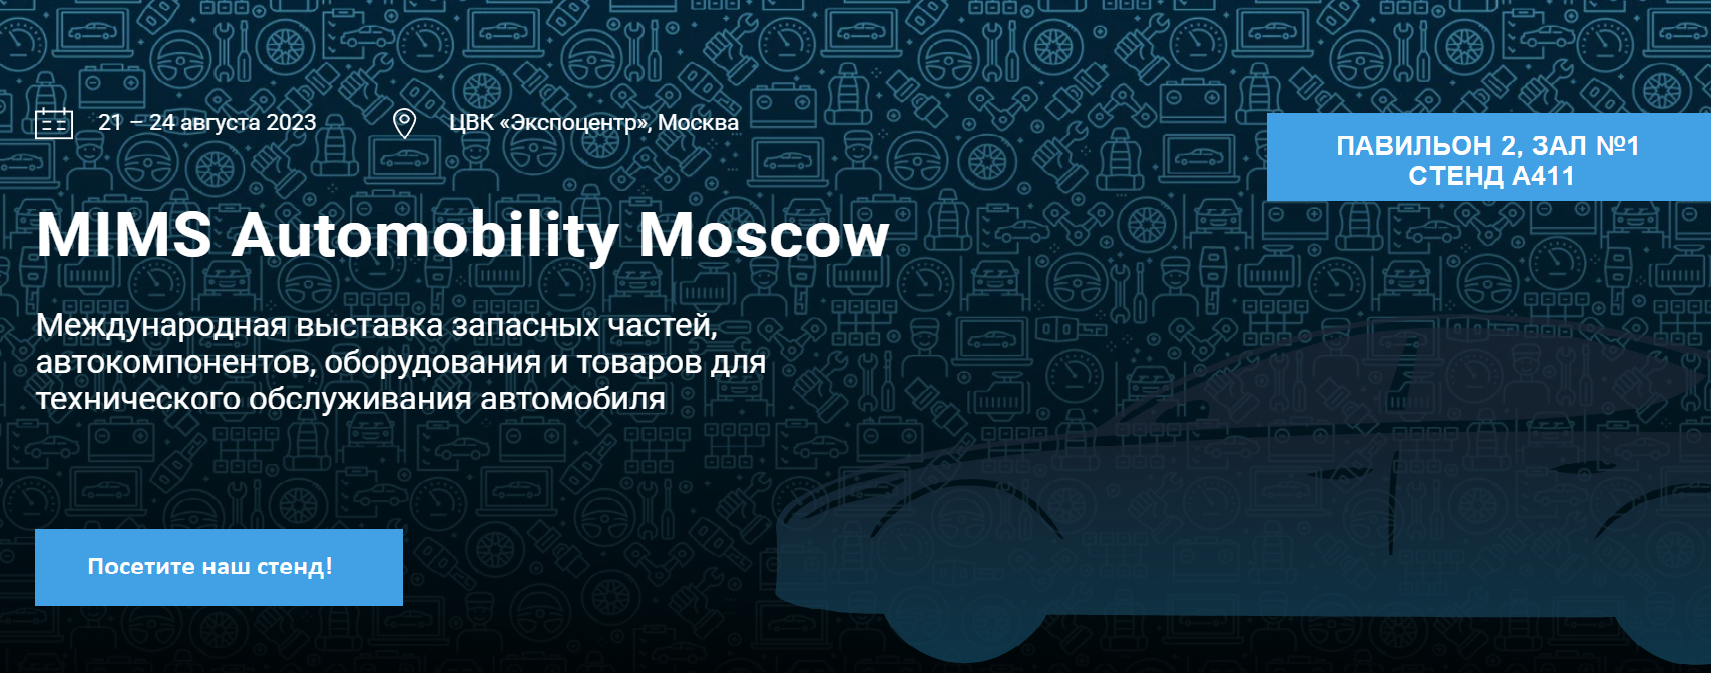 Международная выставка запчастей, автокомпонентов, оборудования и товаров для технического обслуживания автомобилей MIMS Automobility Moscow 2023!